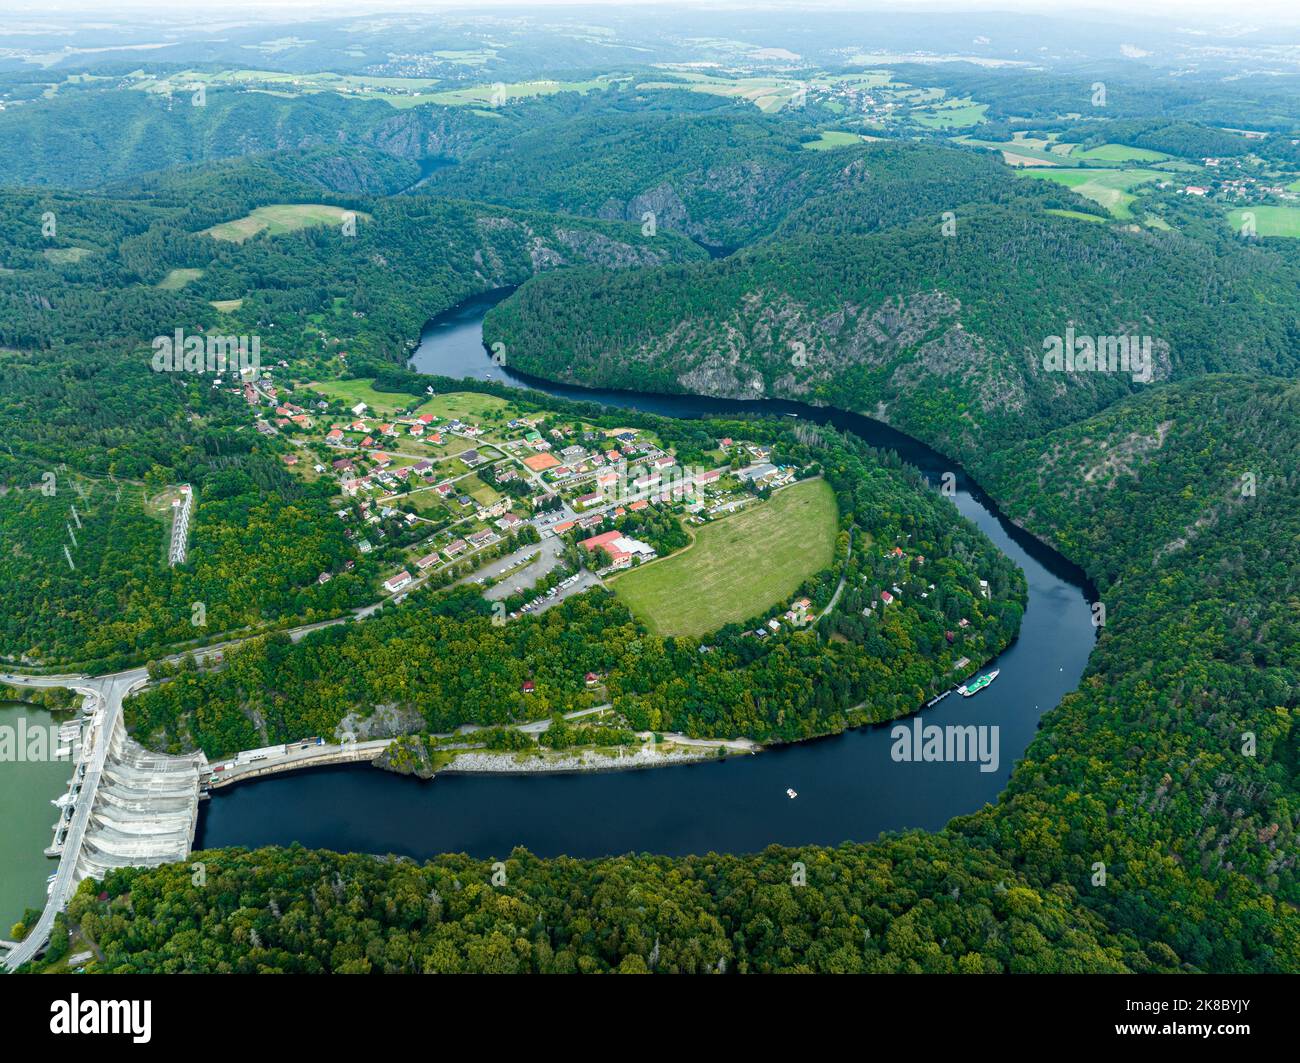 Tschechien. Luftaufnahme der Moldau von Tschechien, Krnany, Europa. Mittelböhmen, Tschechische Republik. Blick von oben in der Nähe von Vyhlidka Maj Aussichtspunkt. Stockfoto